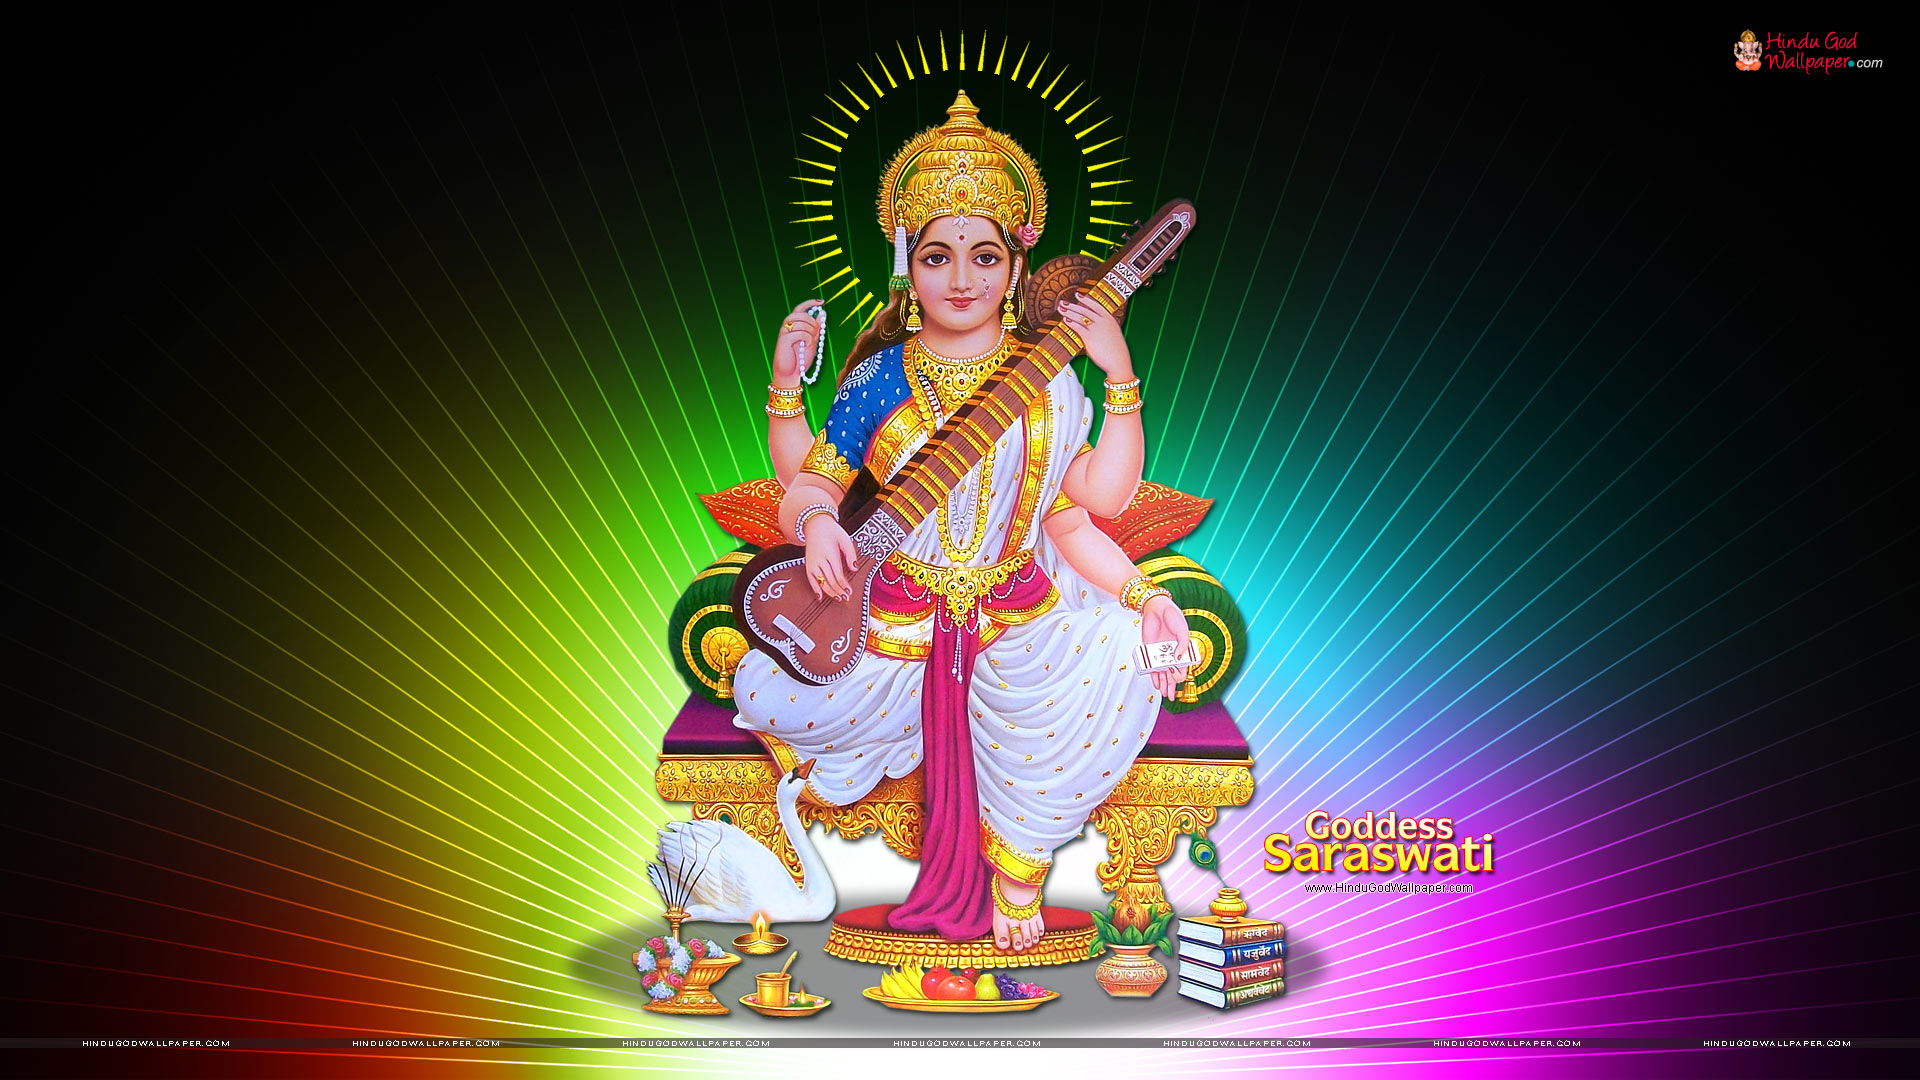 Goddess Saraswati HD Wallpaper, Images, Photos Free Download